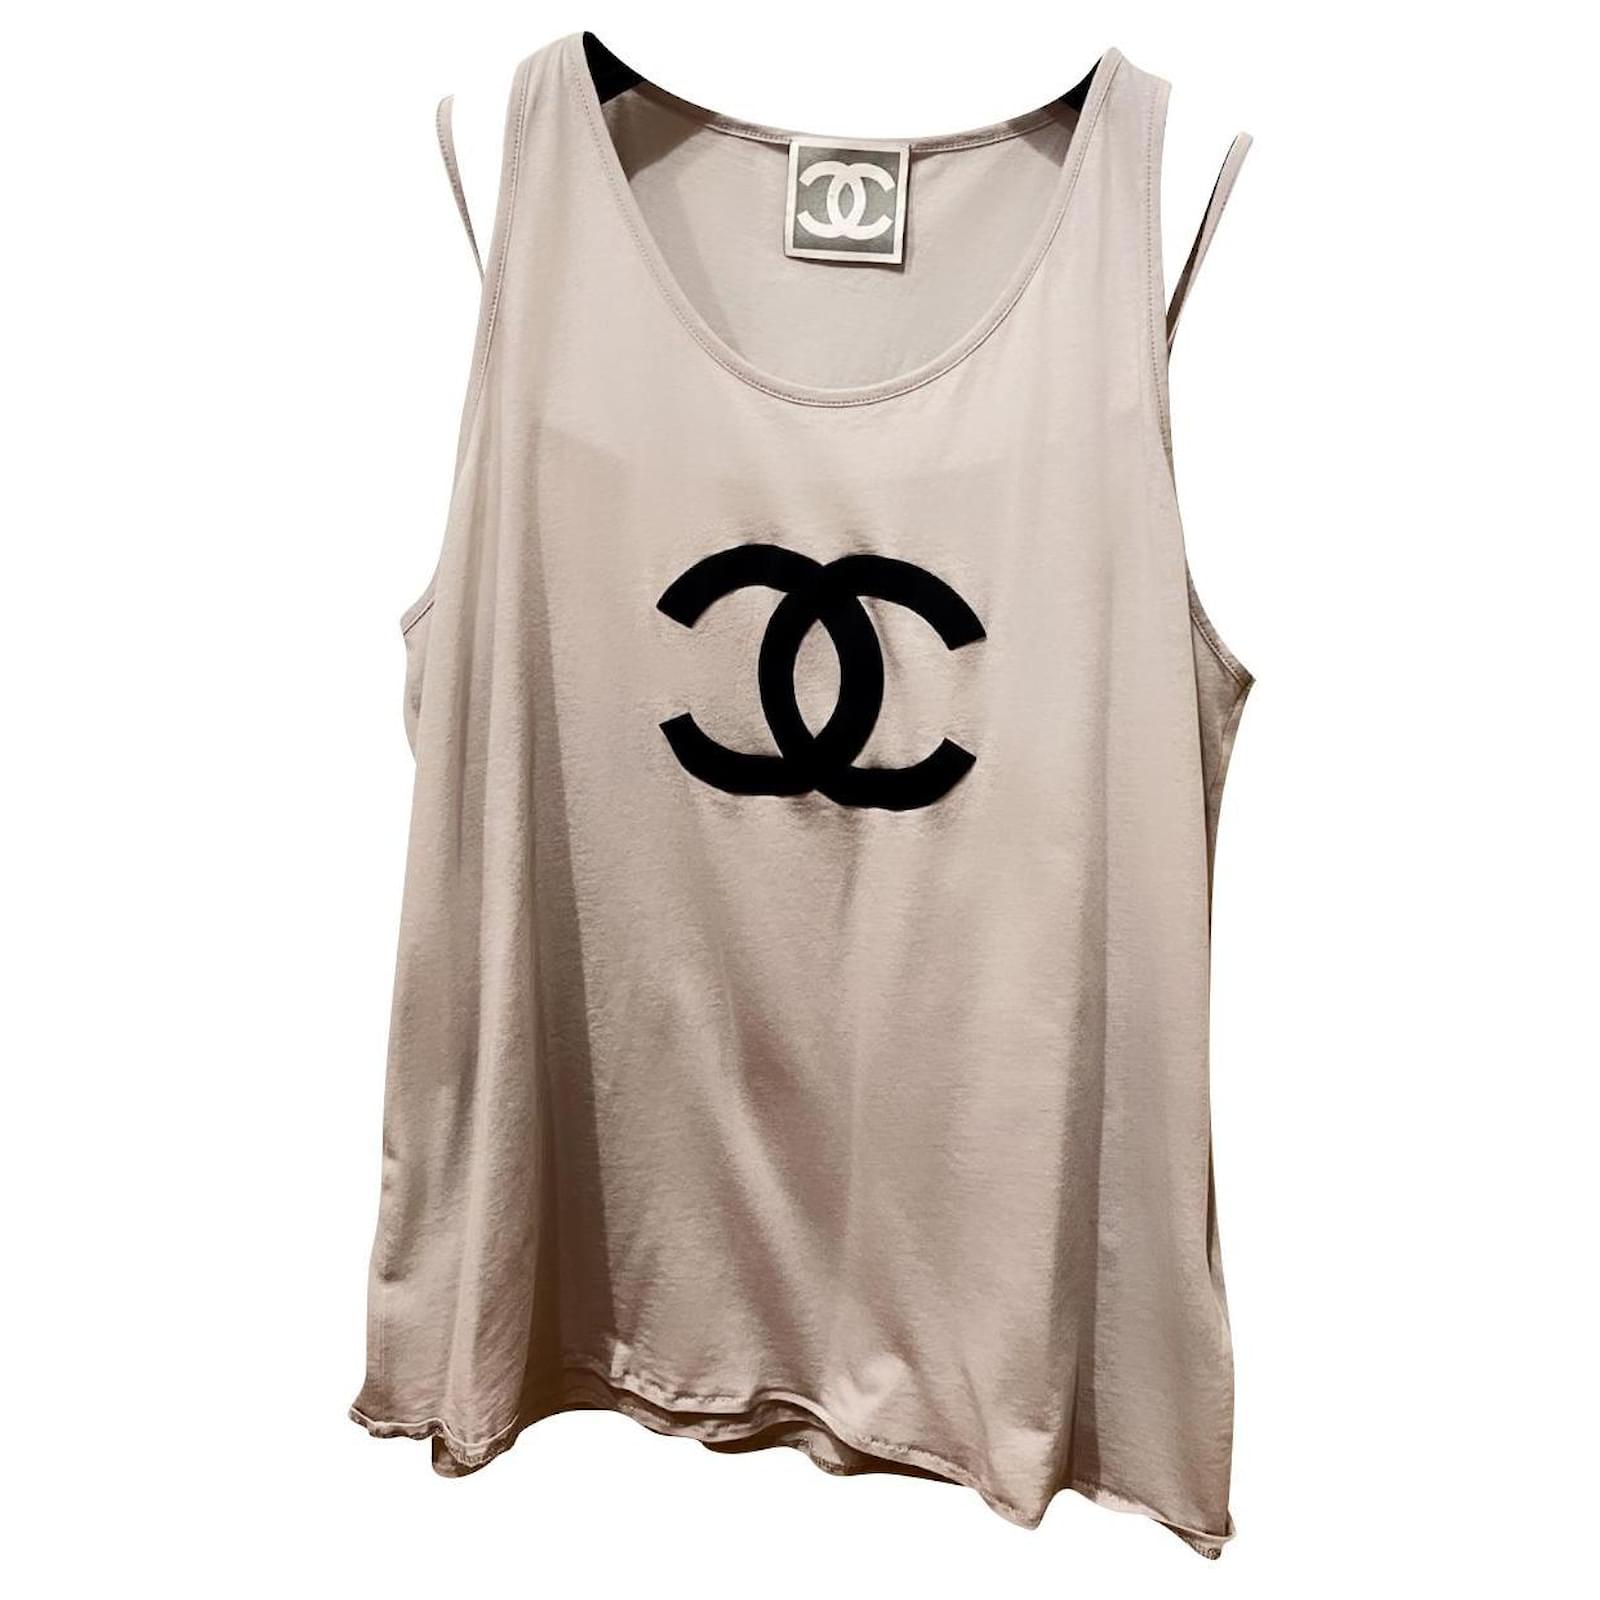 Love Chanel & Champagne Womens Shirt – Gold Peach Apparel